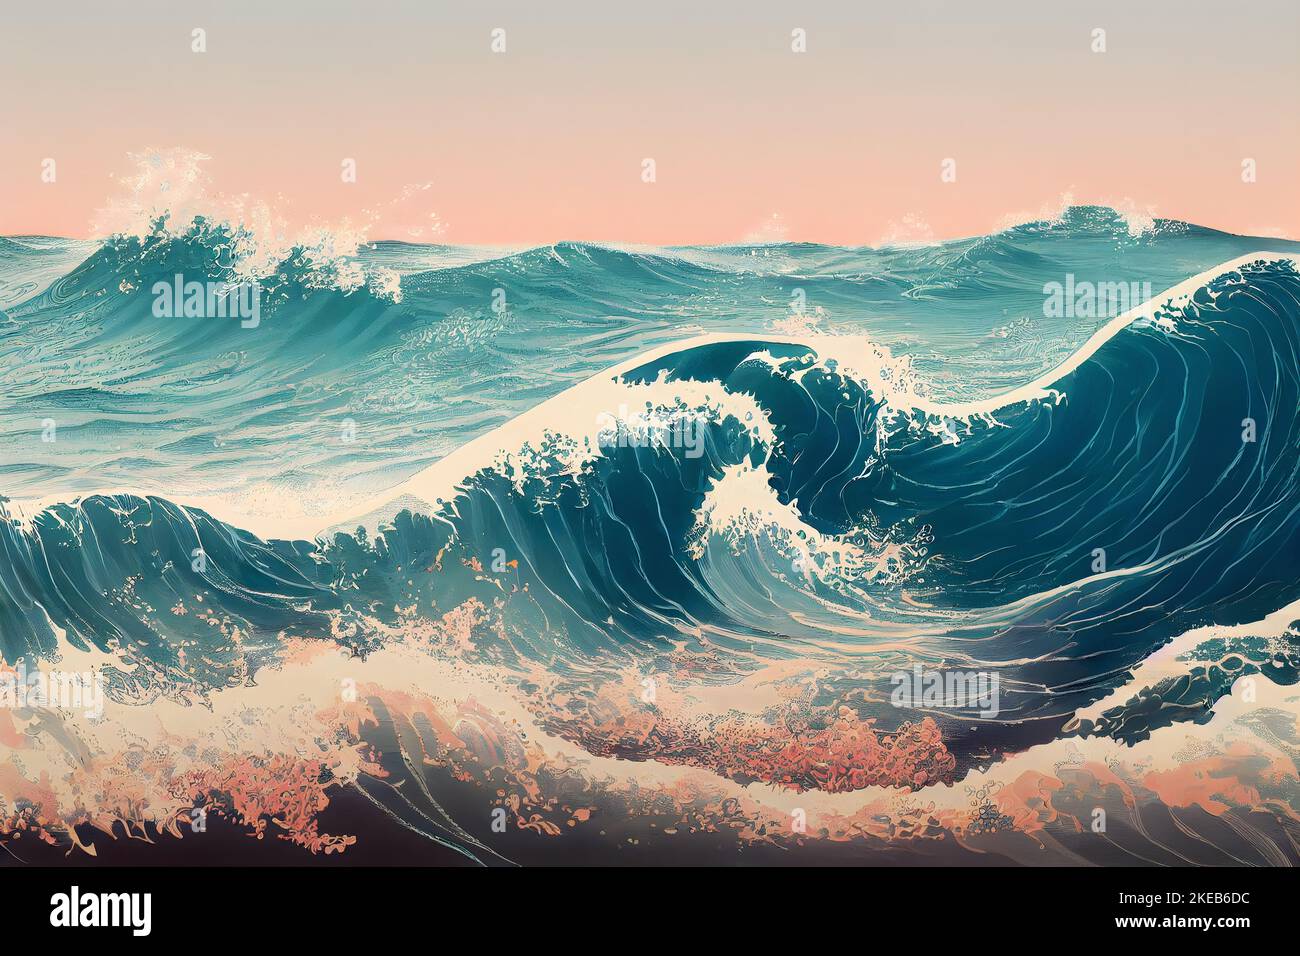 Illustration japonaise des grandes vagues de l'océan comme papier peint (style de Katsushika Hokusai). Banque D'Images